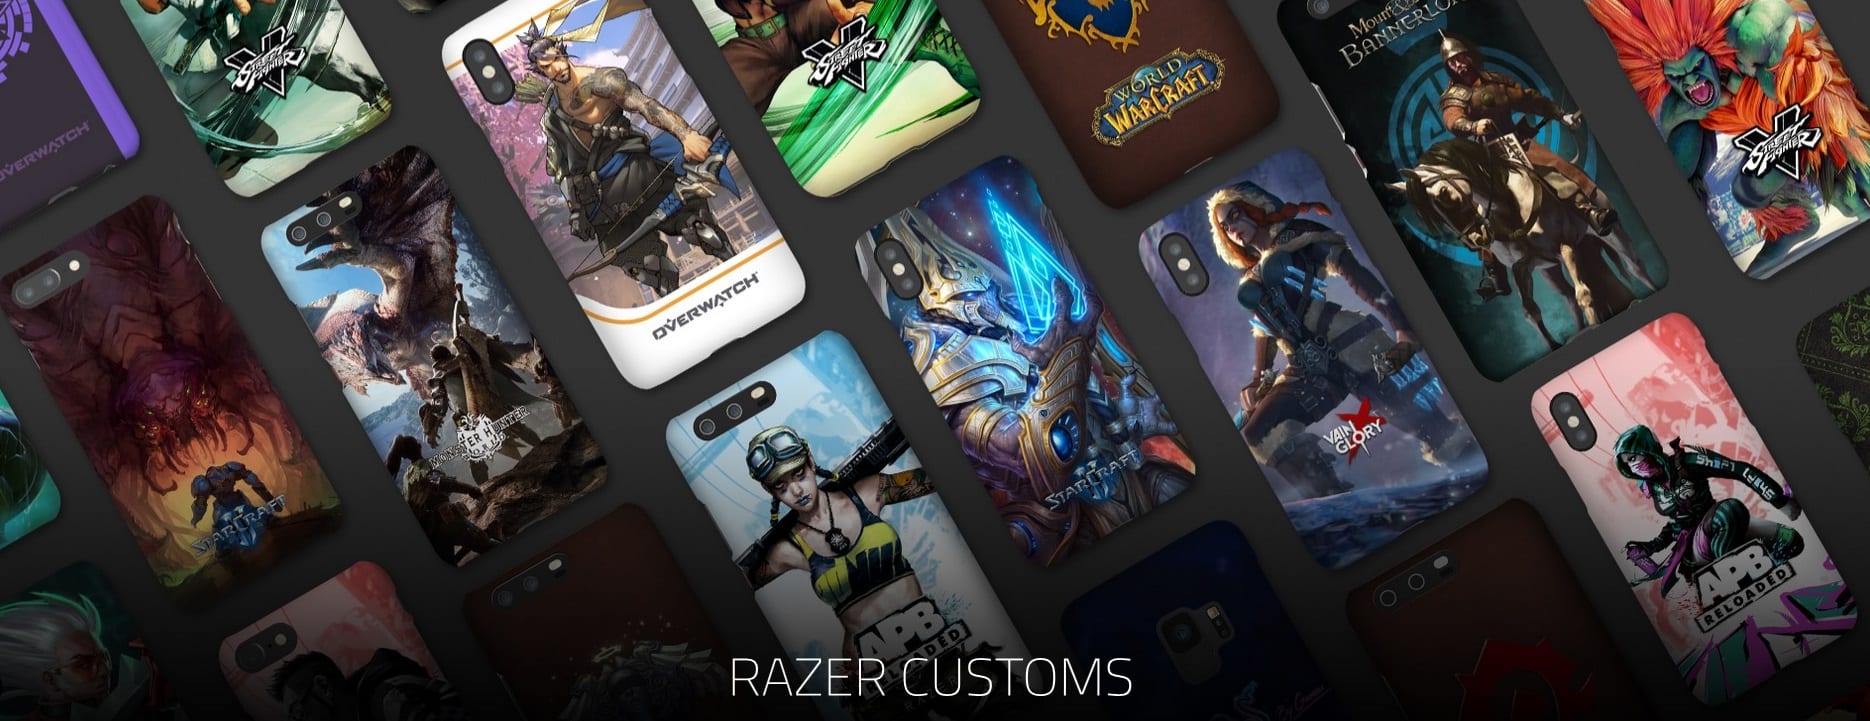 Razer Customs, un serviciu pentru cei ce doresc o carcasă ultra personalizată de smartphone